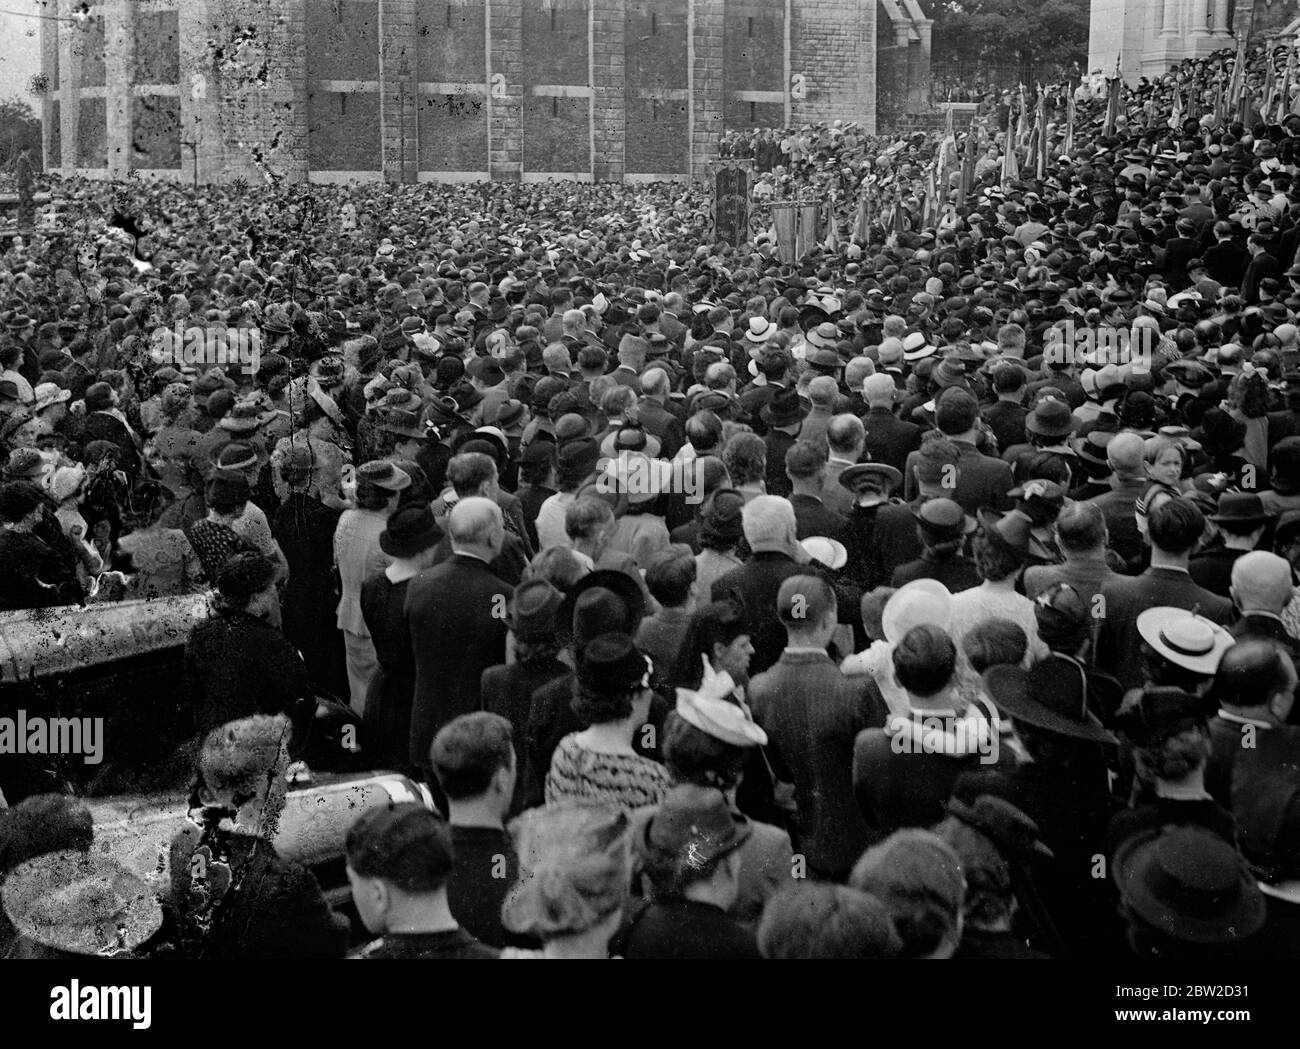 Tausende von Parisern, alt und jung, besteigen die Hügel der Stadt bis Montmartre, um sich in der Kirche Sacre Coeur unter der Leitung von Kardinal Verdier, Erzbischof von Paris, für den Frieden zu beten. Bis 28. August 1939 Stockfoto